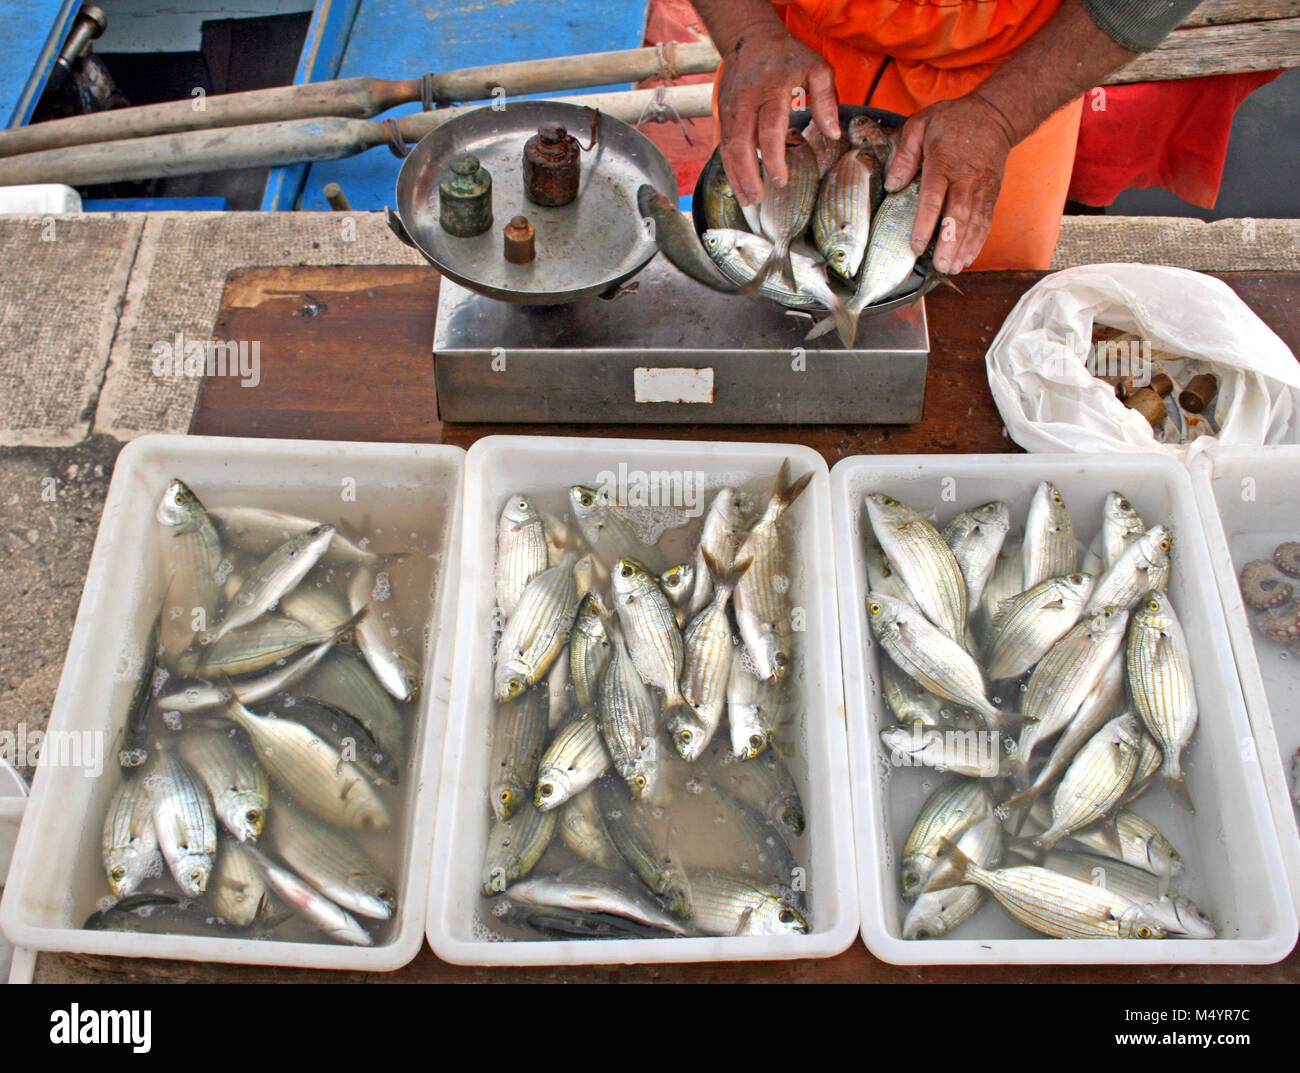 Lokale fischer Verkauf sarpa salpa, allgemein bekannt als die dreamfish, Salema, salema Porgy, Kuh Brassen oder goldline in der Nähe des Meeres in Bari Promenade mit Stockfoto